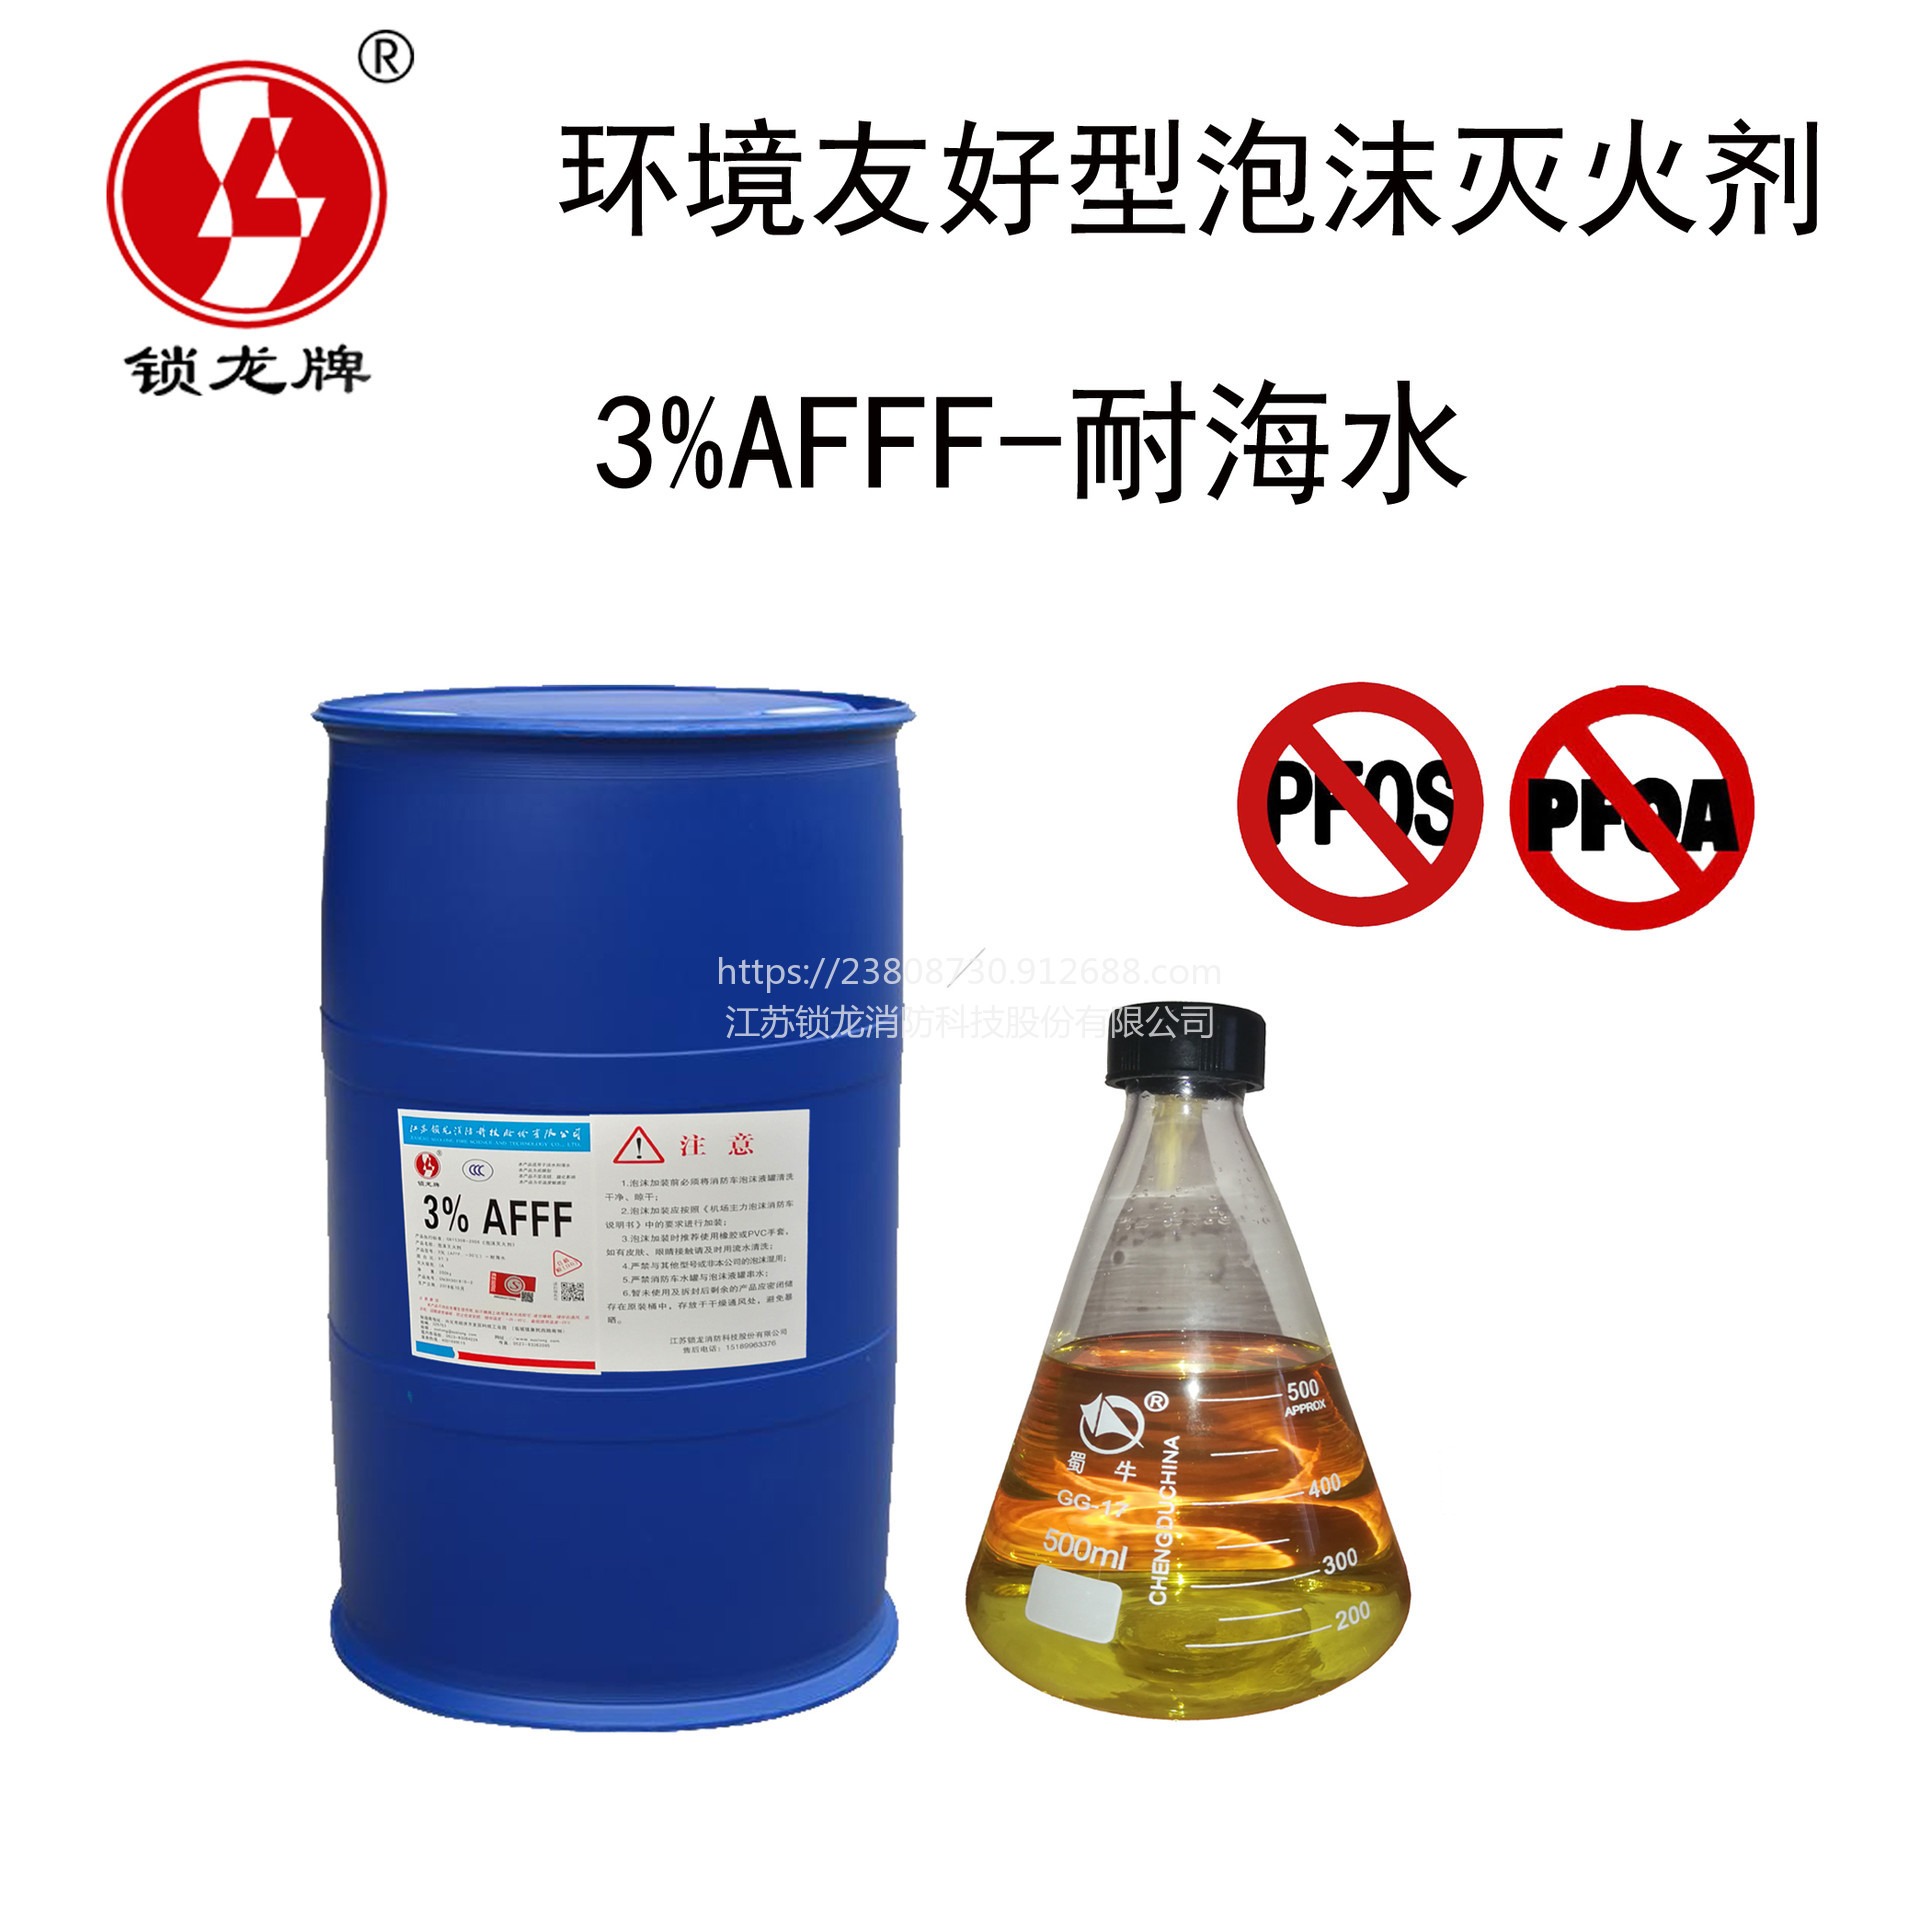 锁龙环境友好型泡沫灭火剂 SL-AFFF3%-耐寒耐海水水成膜泡沫灭火剂 不含PFOS/PFOA无毒环保可降解图片